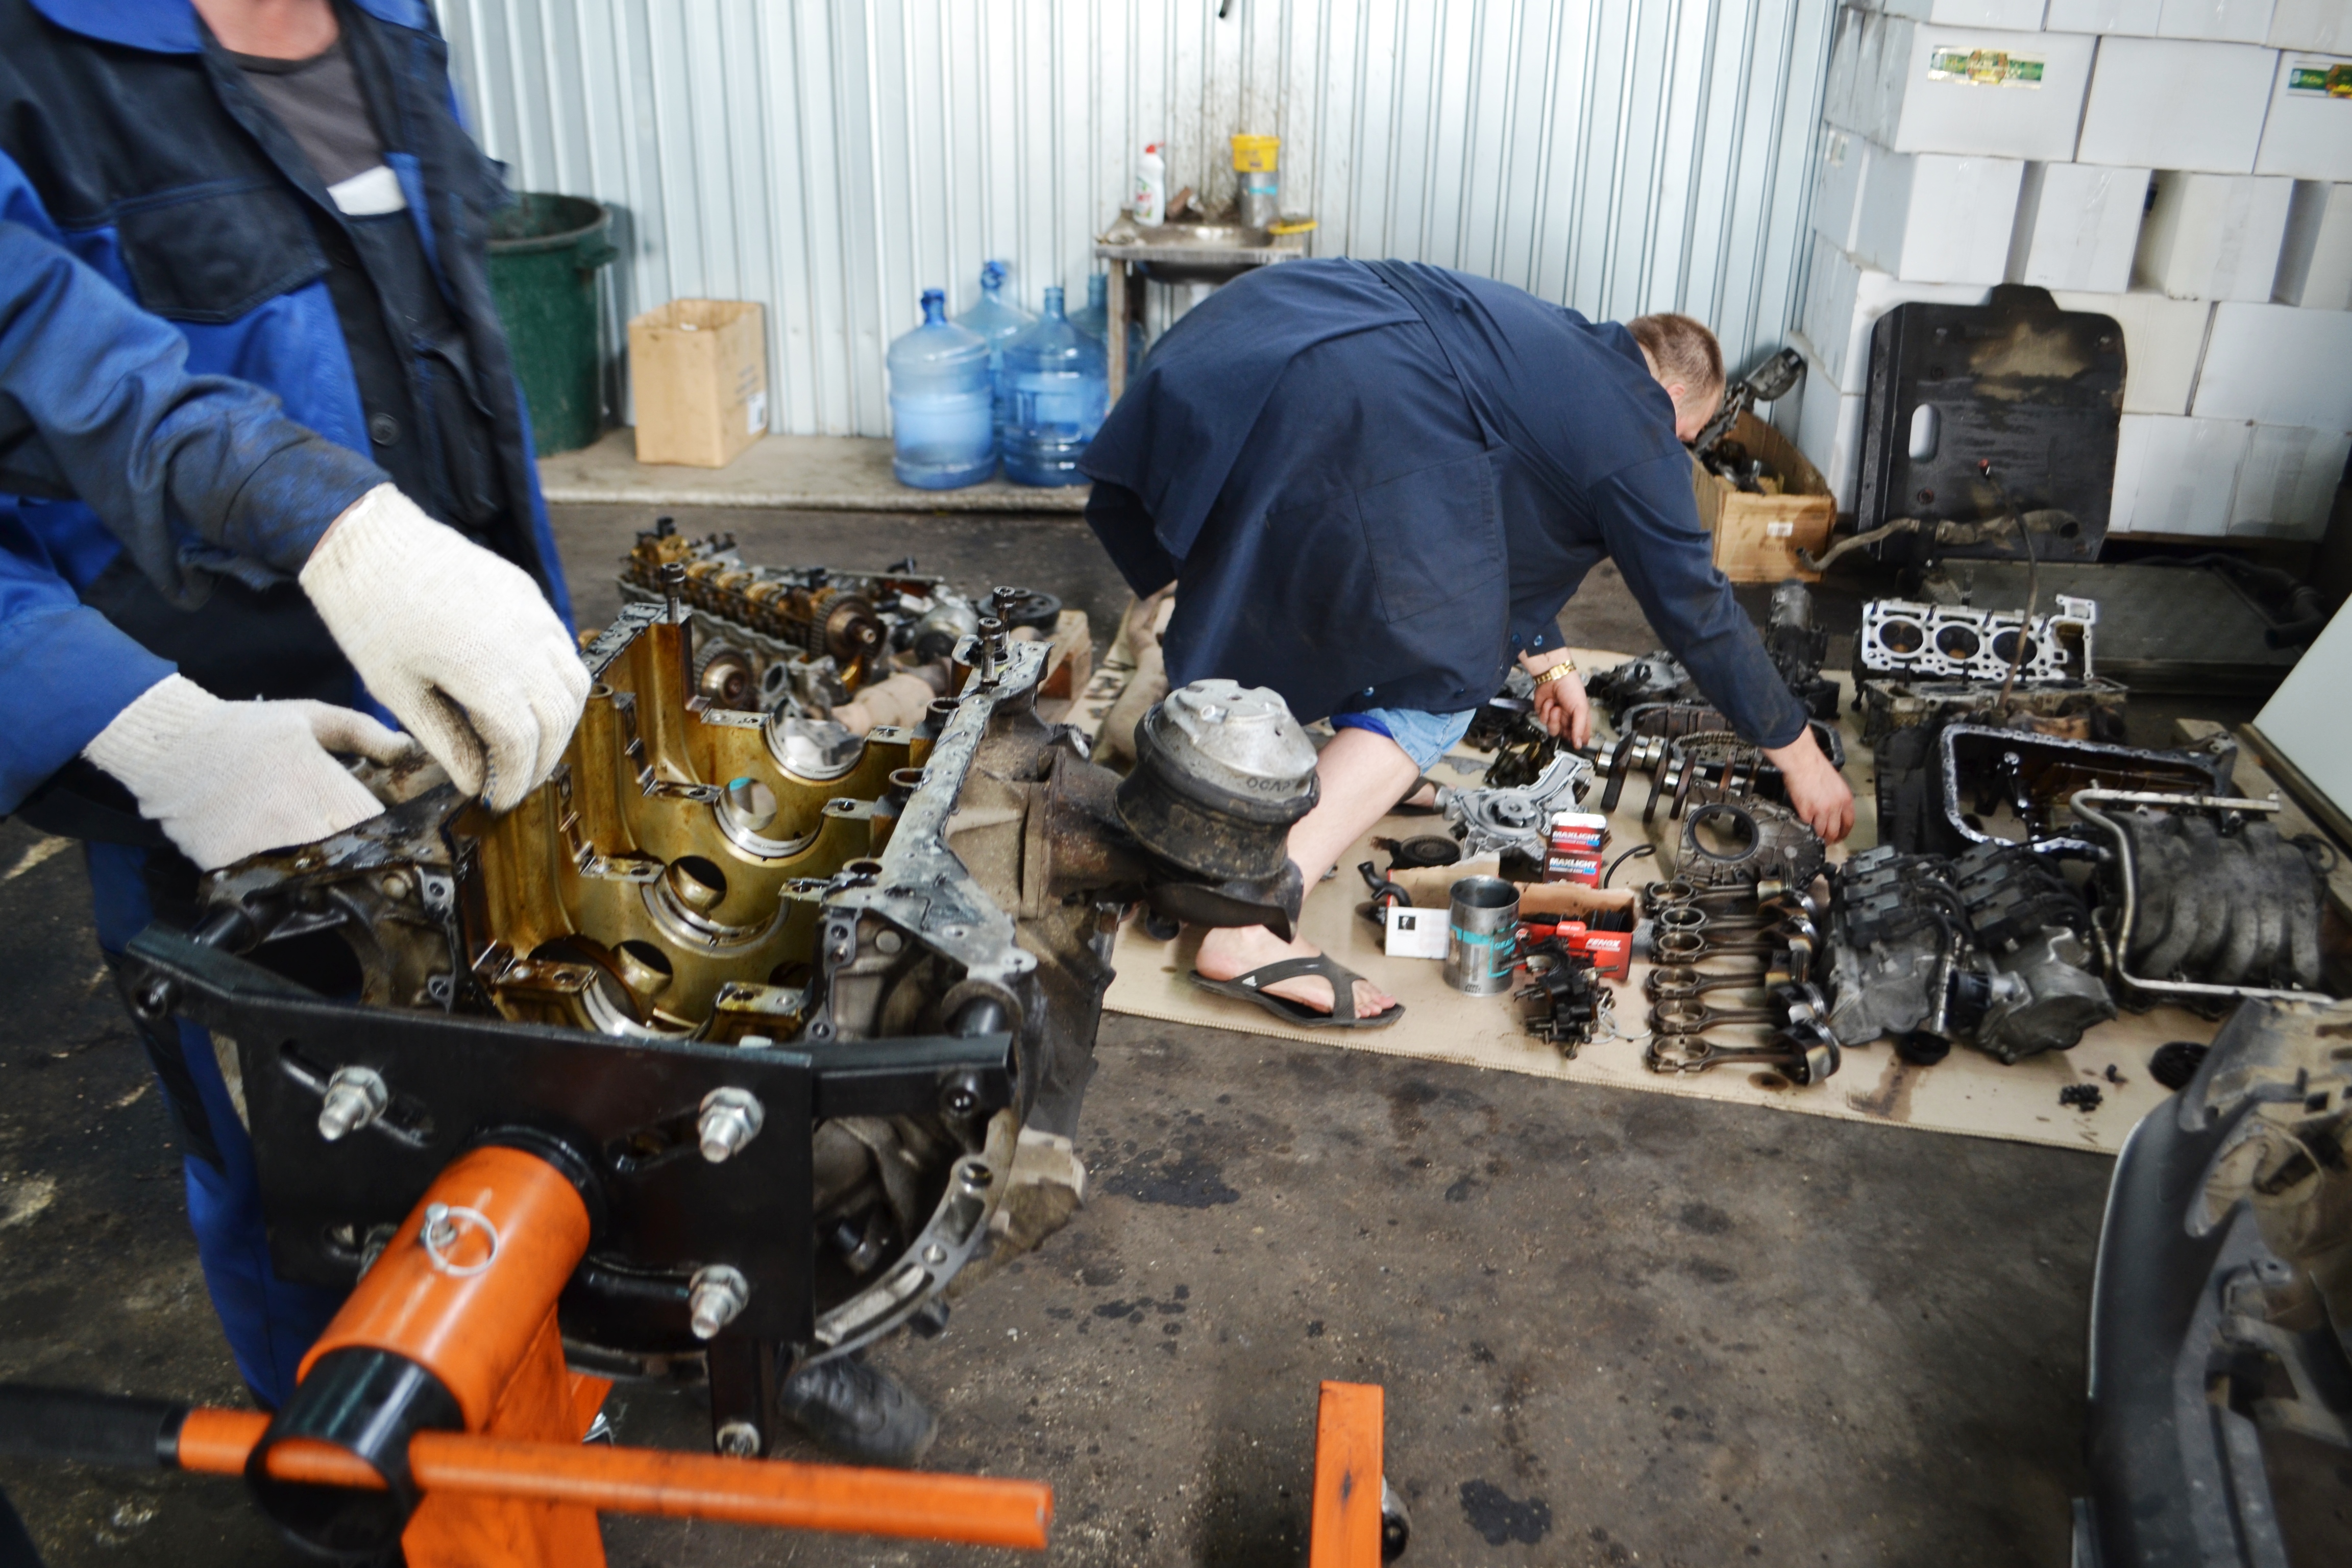 Правильный капитальный ремонт двигателя